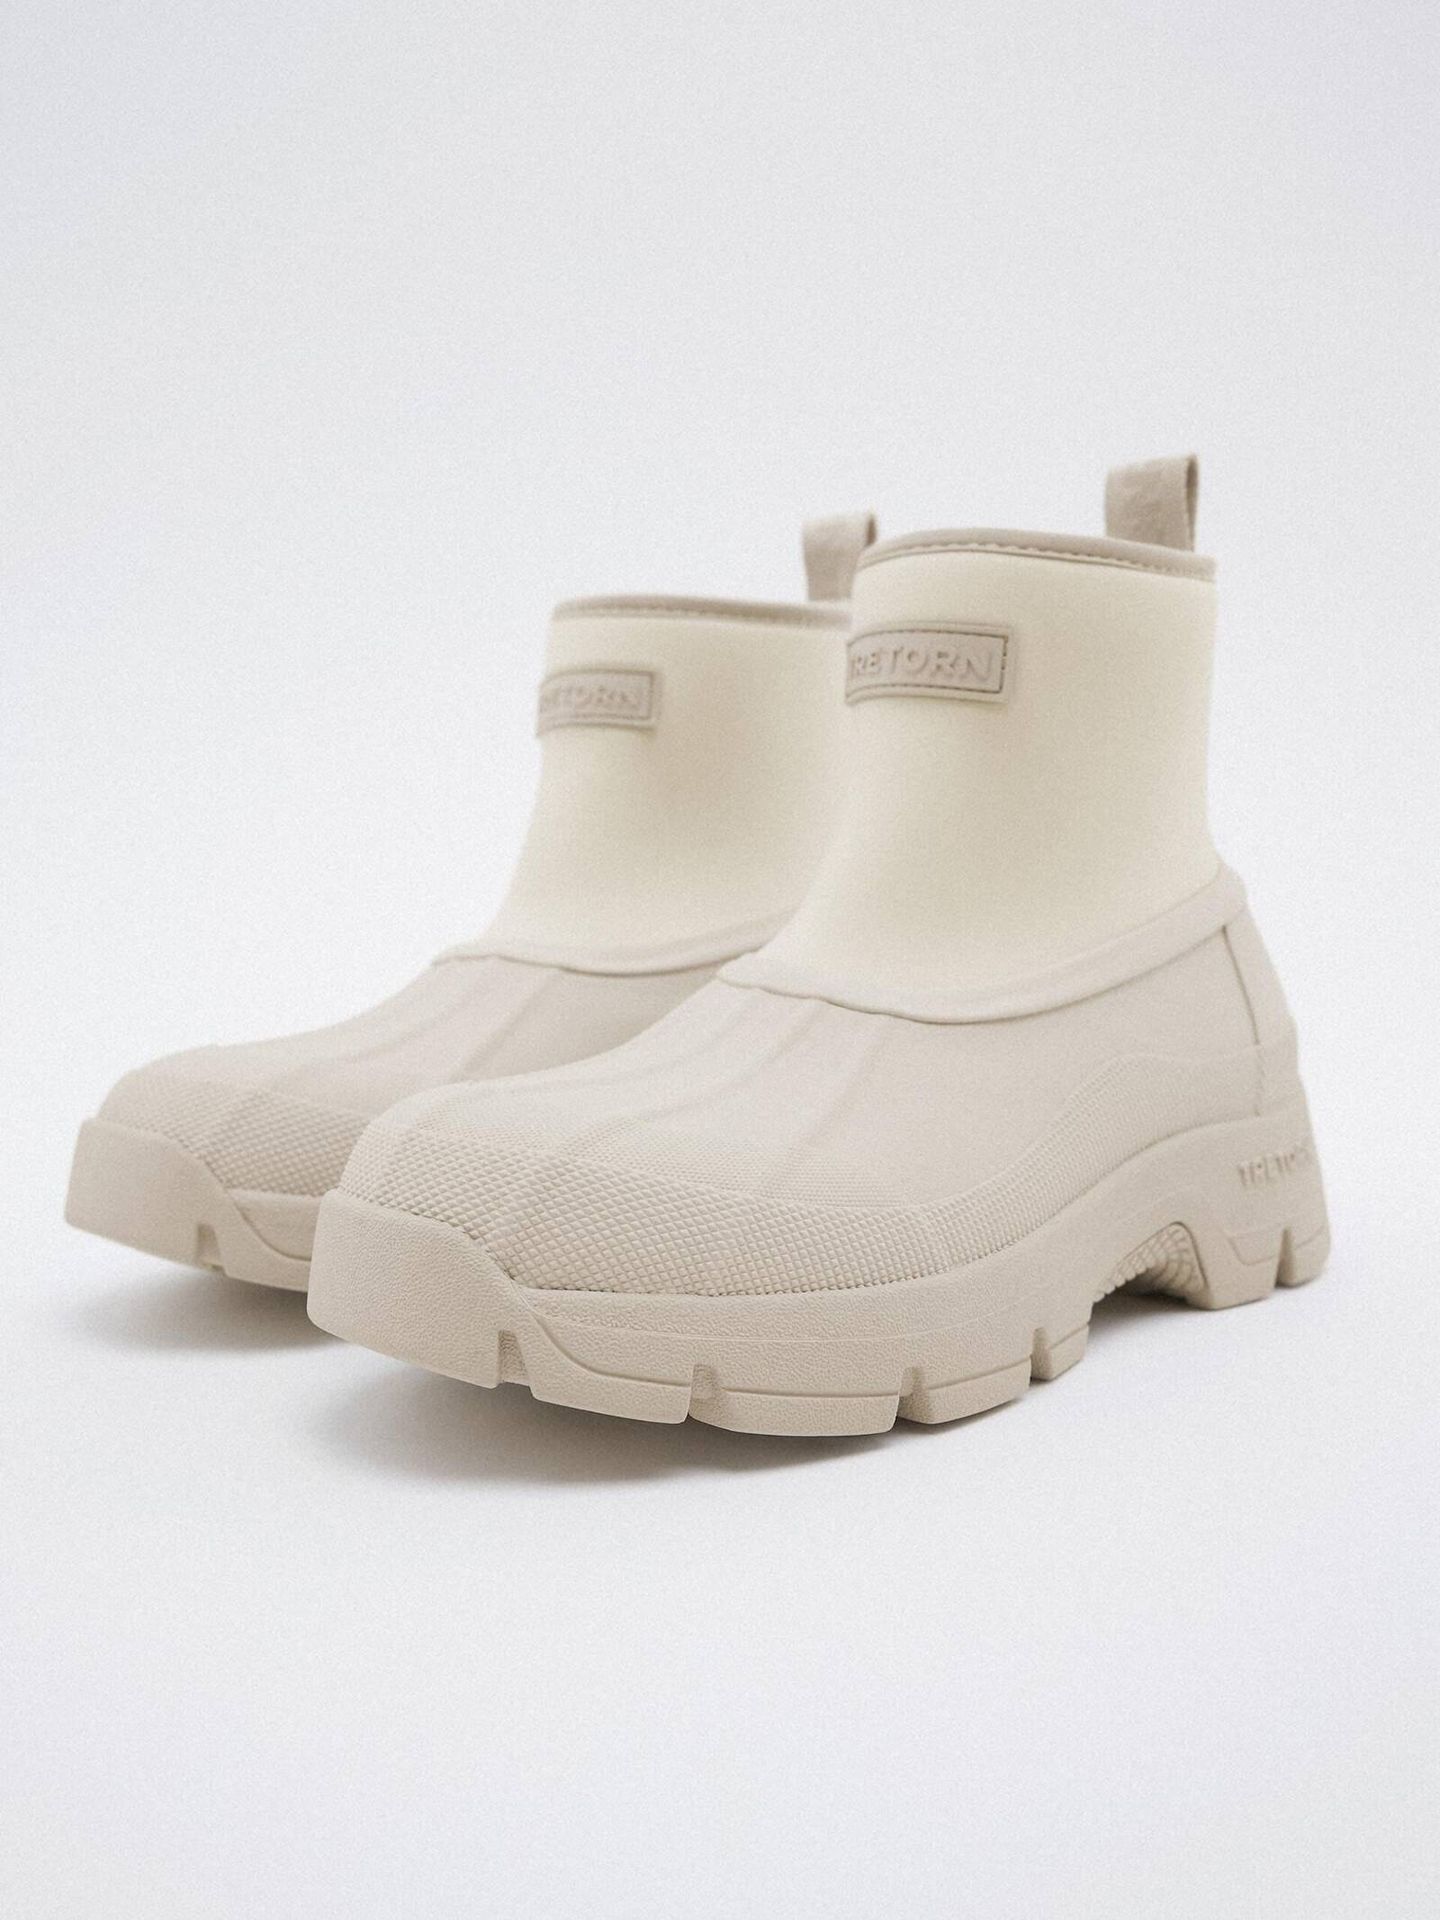 Nueva colección de botas de agua y mochilas de Zara y Tretorn. (Cortesía/Zara)